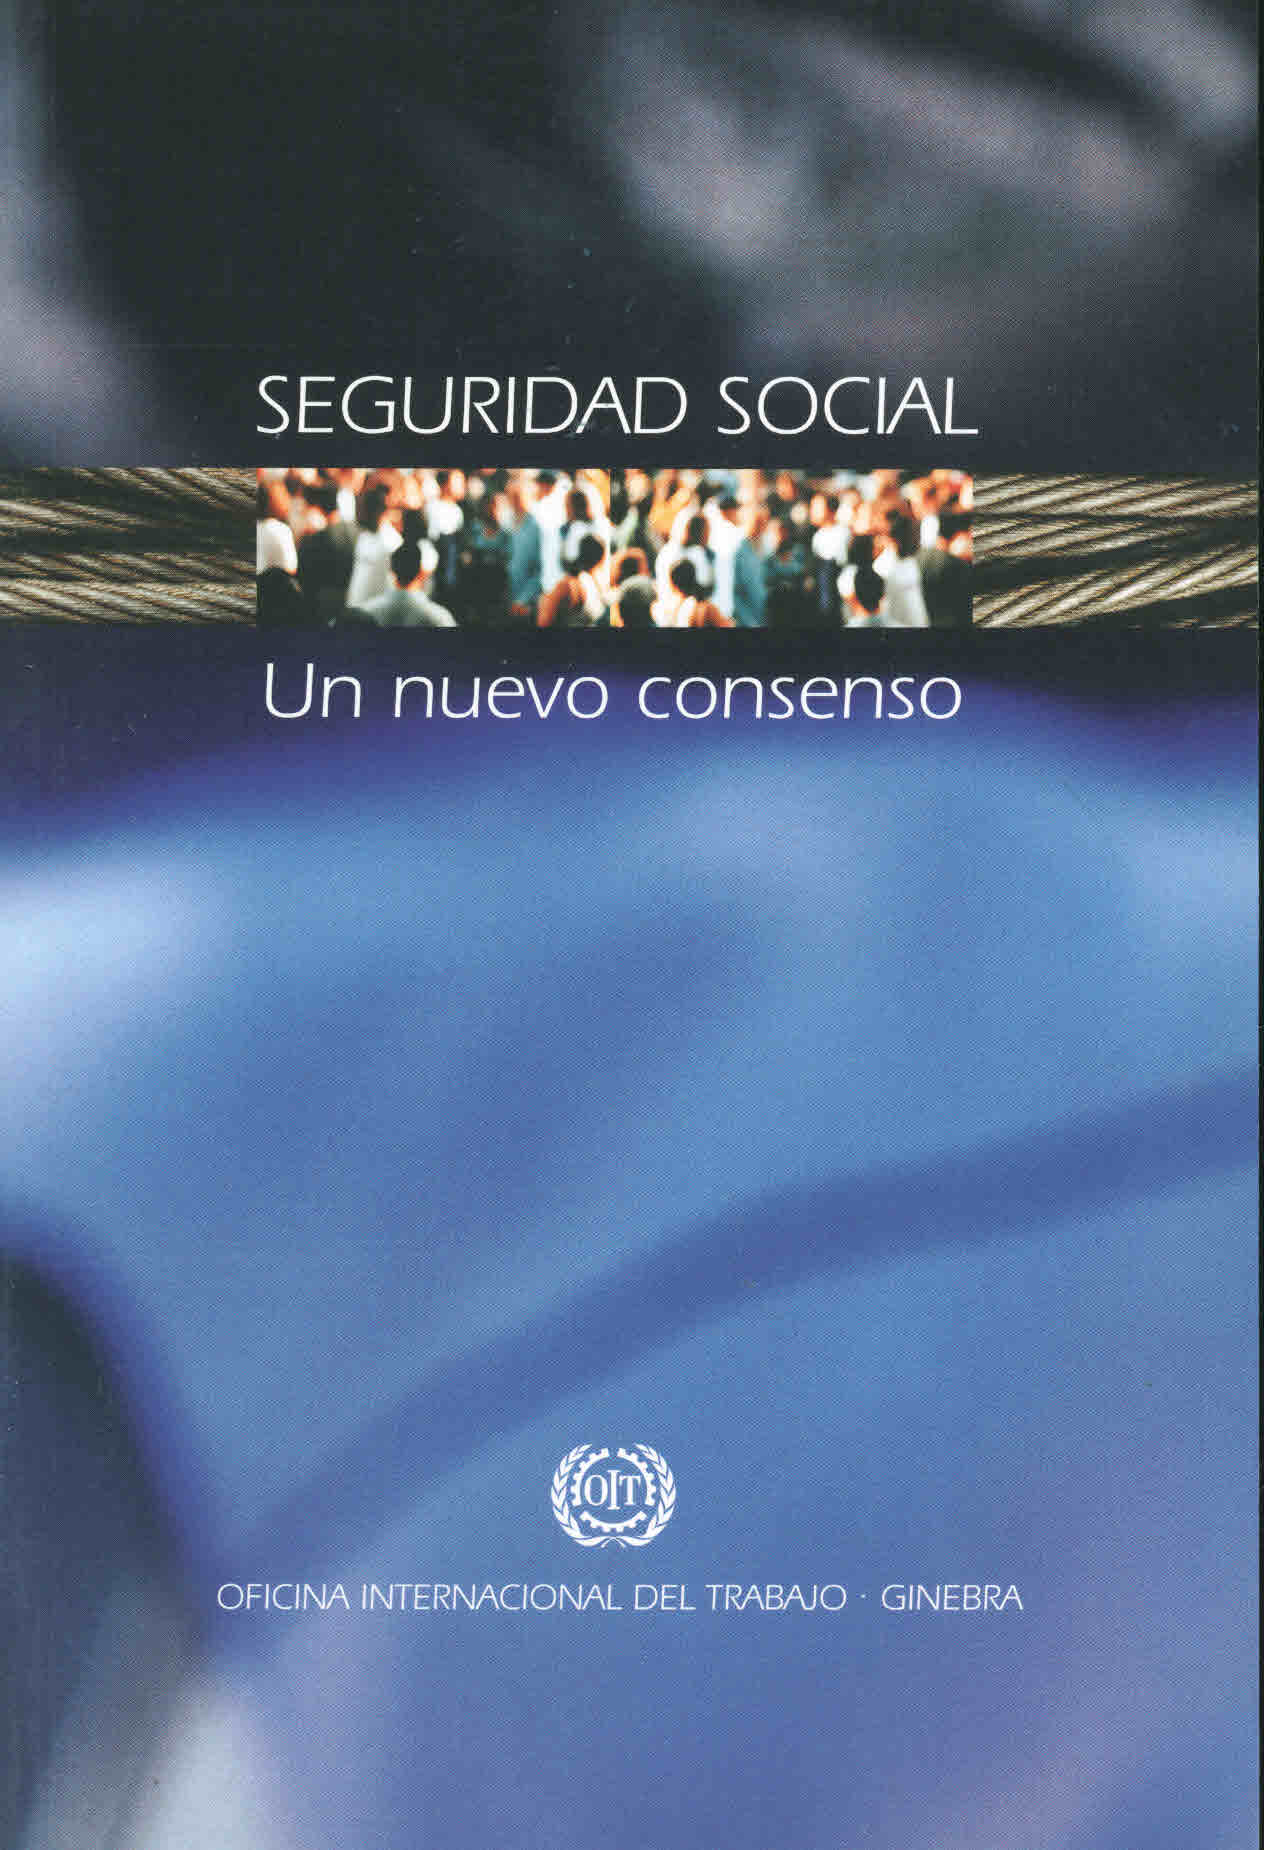 Seguridad social: un nuevo consenso